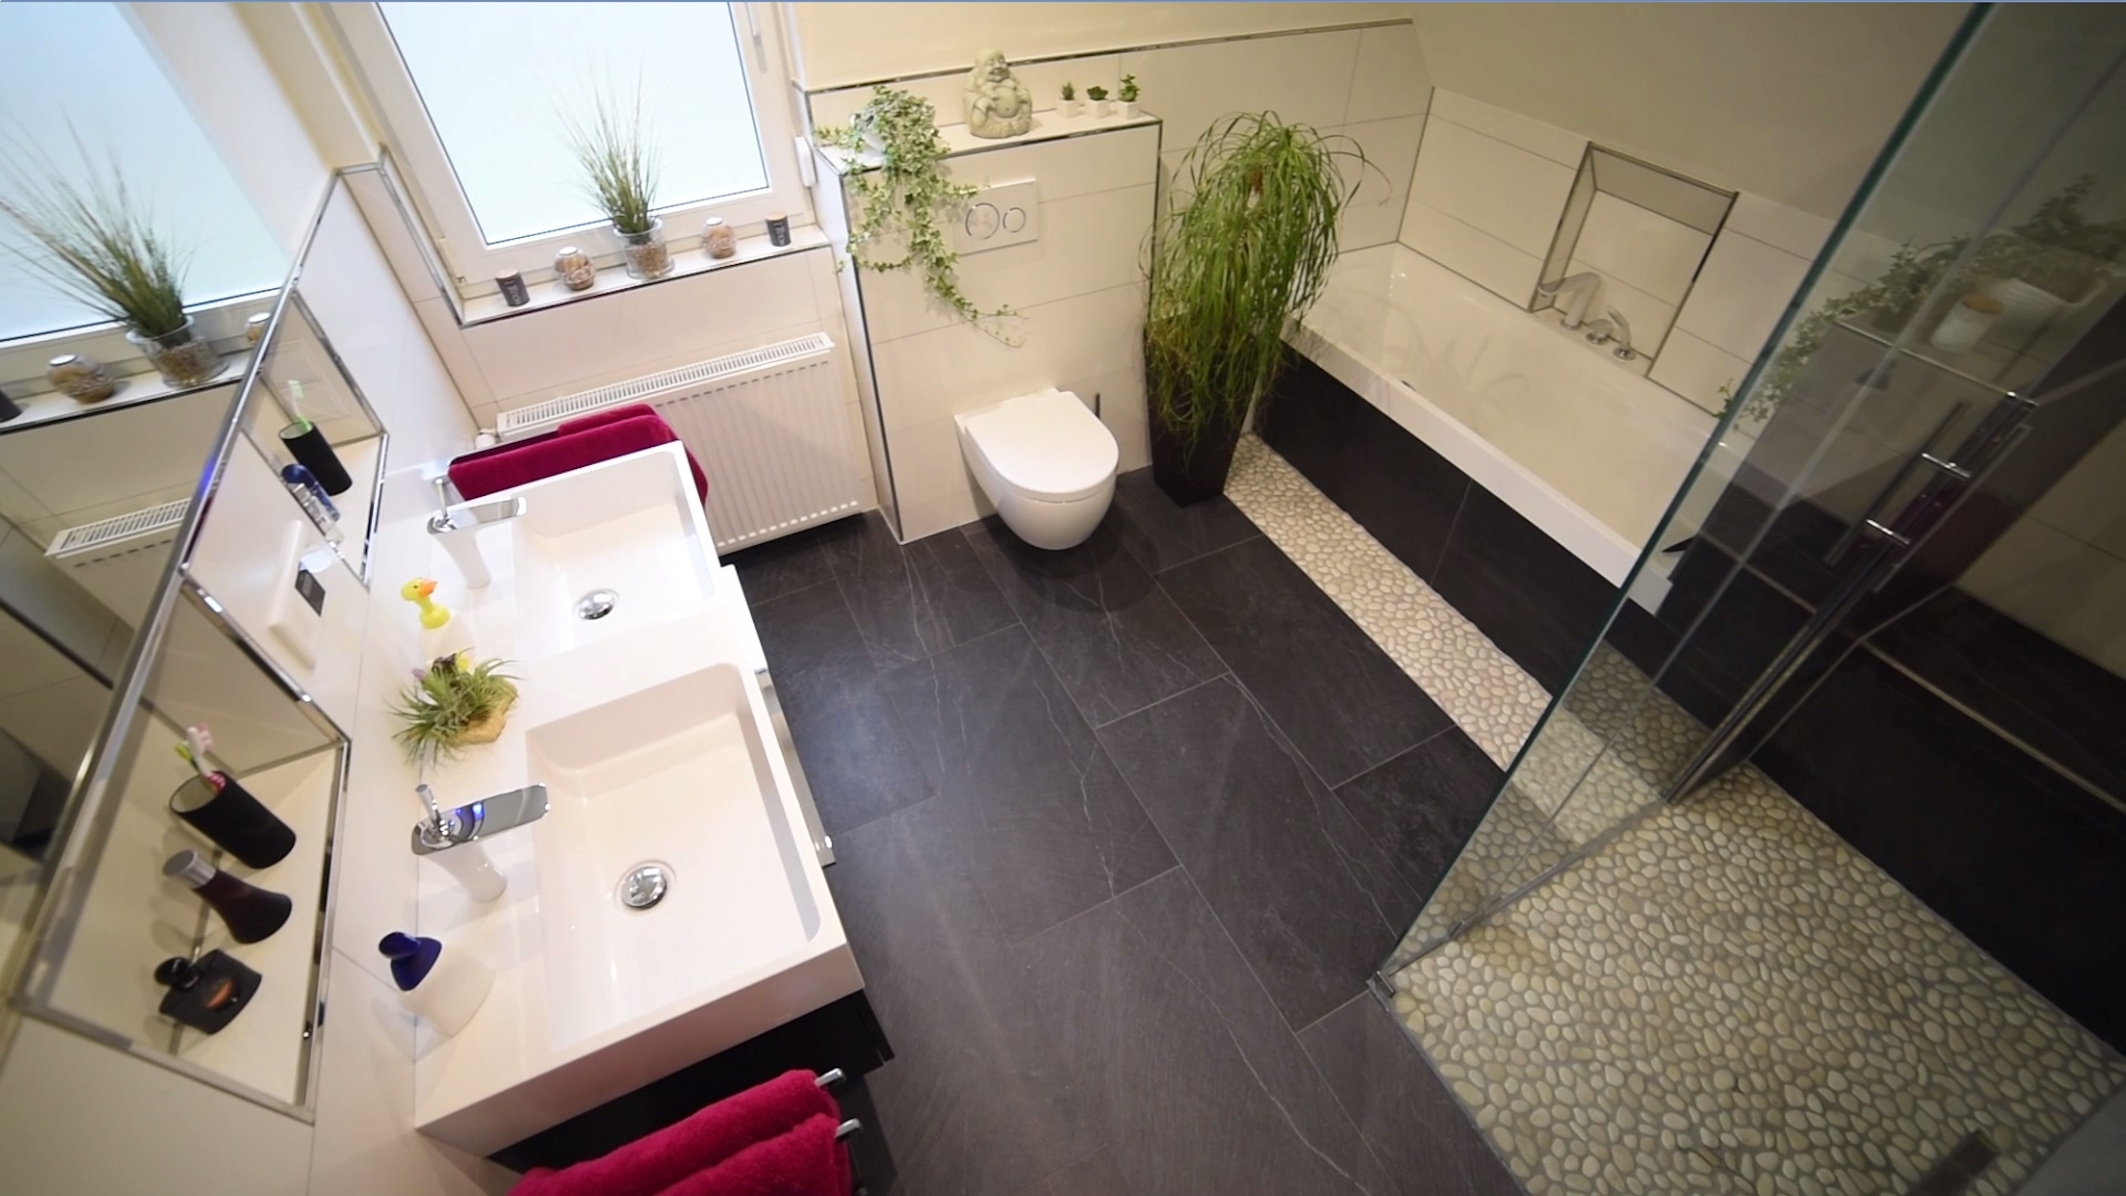 Frisch modernisiertes Bad in Grau und Weiß aus der Vogelperspektive